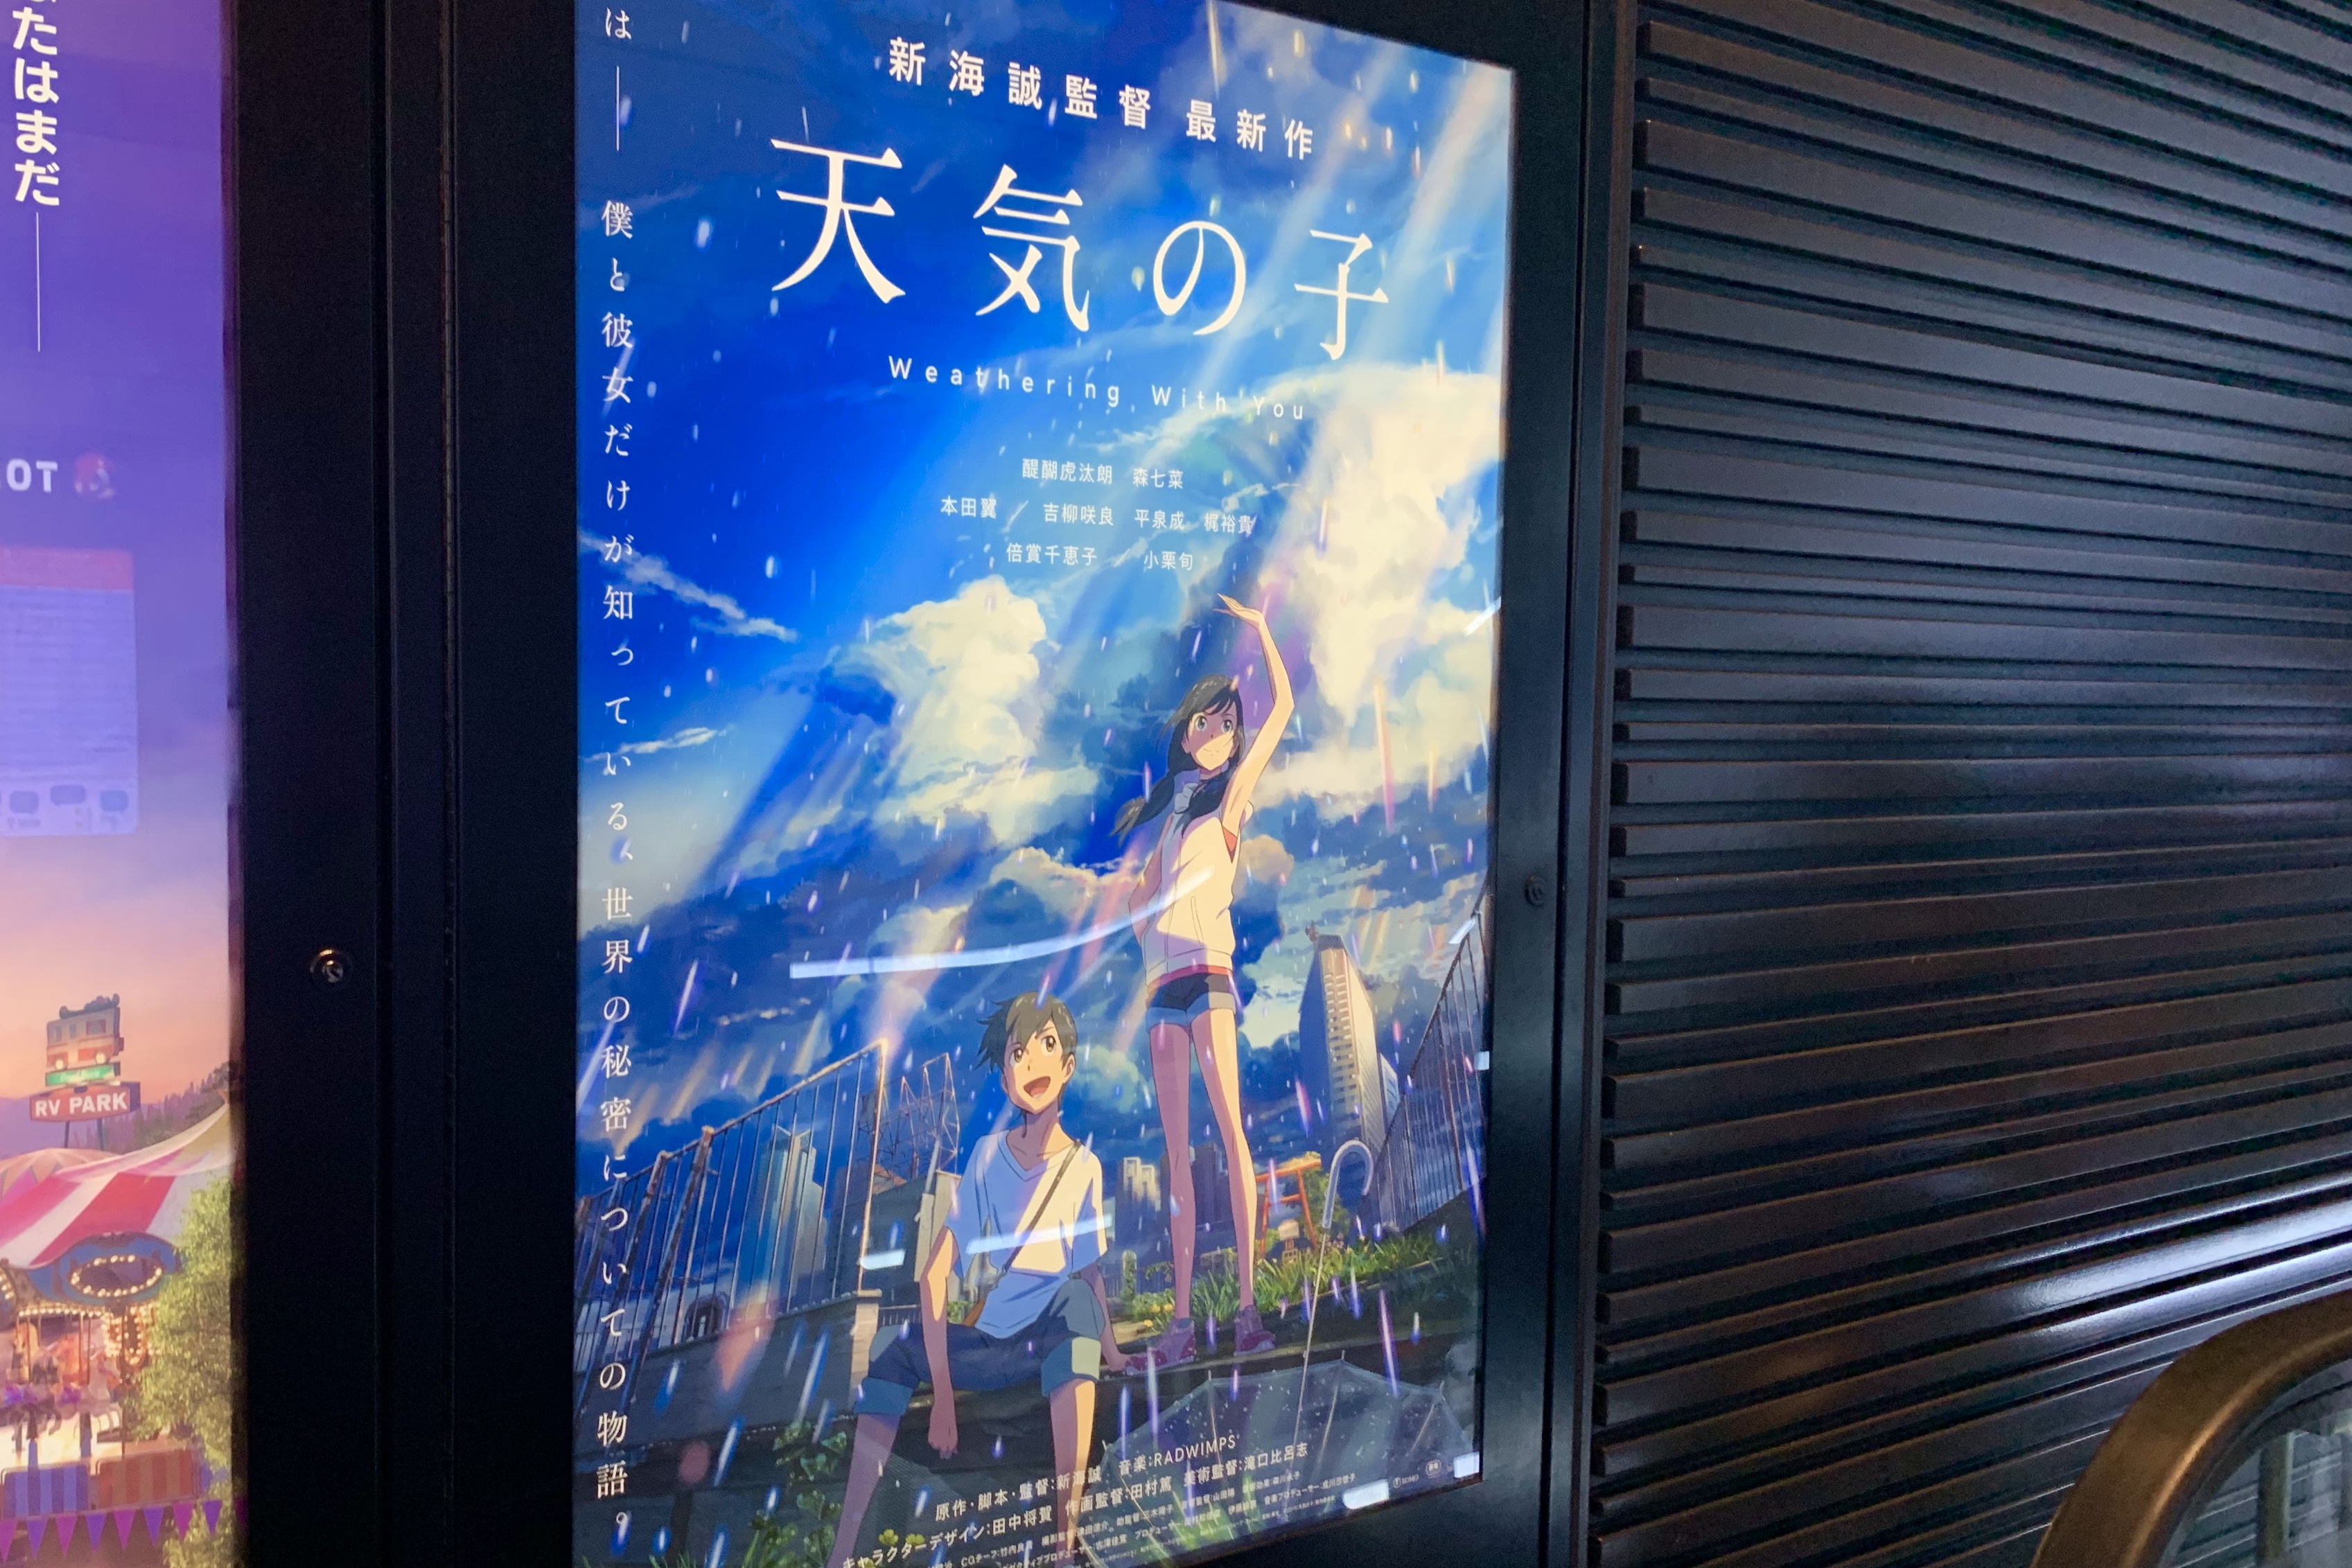 新宿TOHOシネマズにあった『天気の子』のデジタルサイネージ